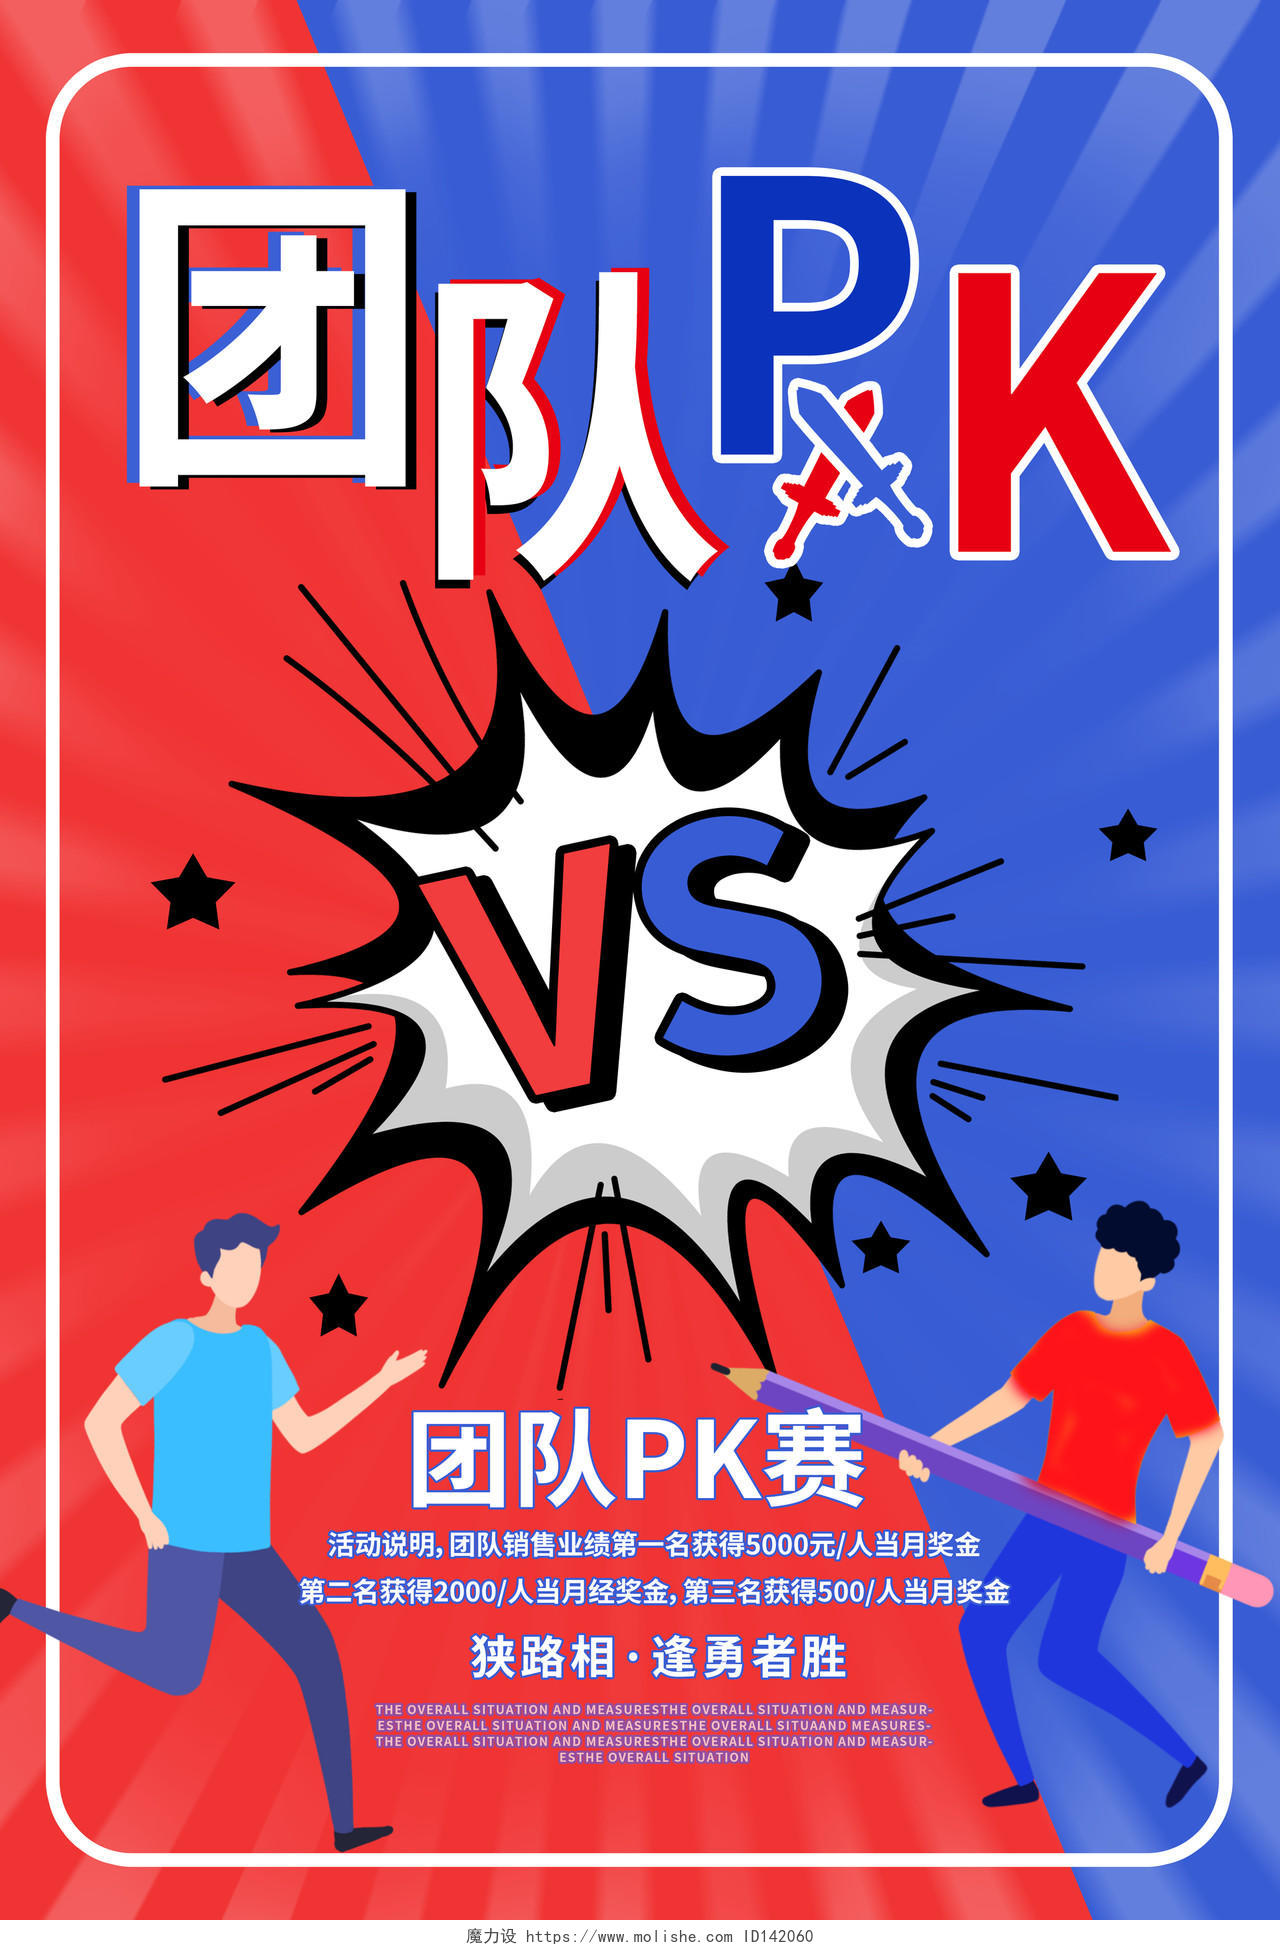 红蓝色漫画风格团队PKVS团队比赛海报设计pk对抗